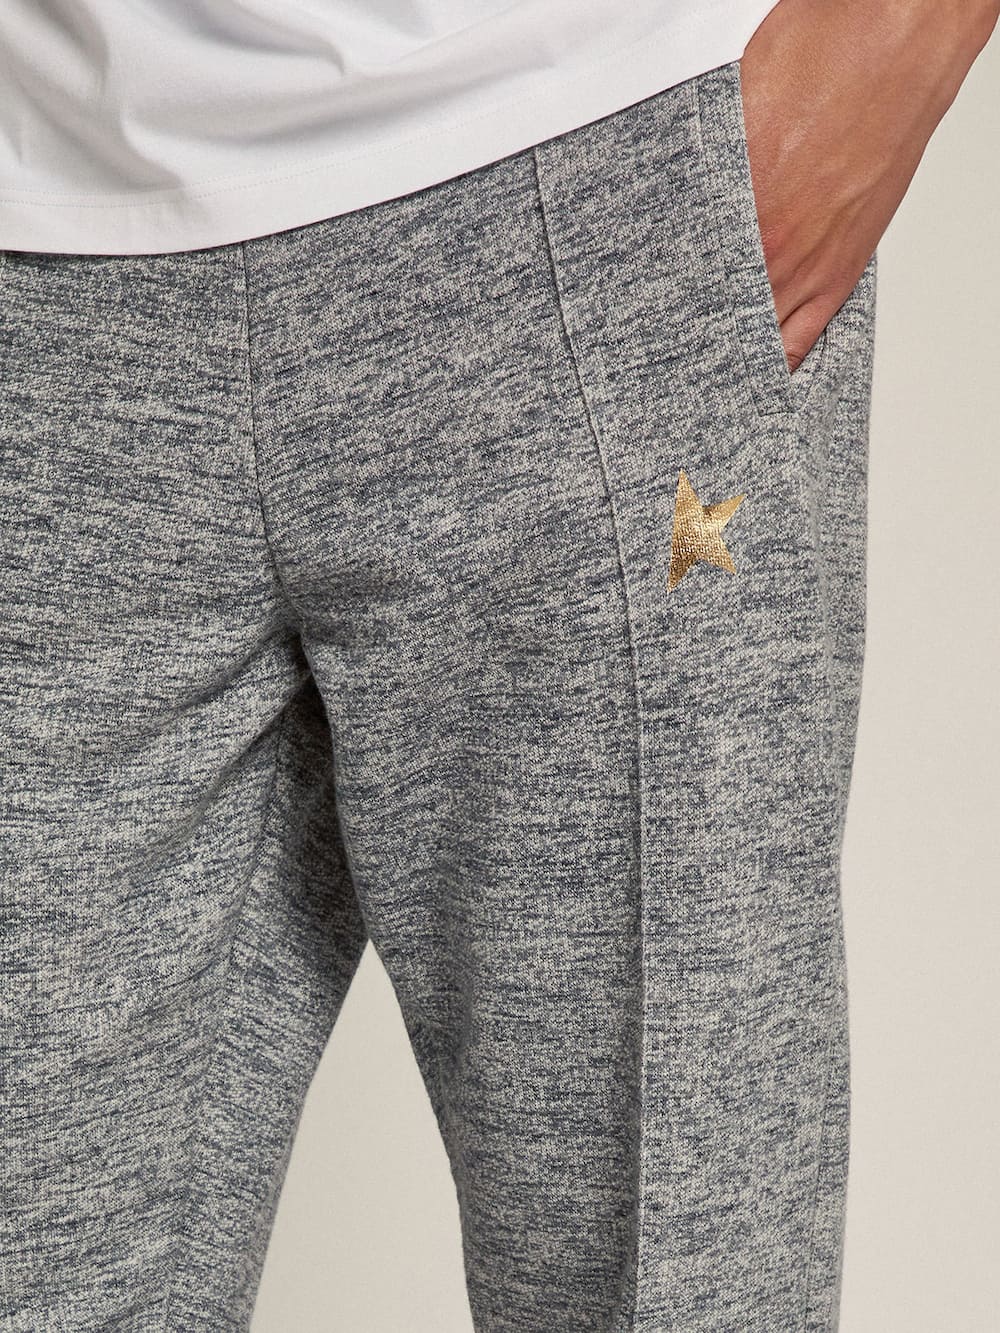 Golden Goose - Pantalone jogging da uomo color grigio con stella dorata davanti in 